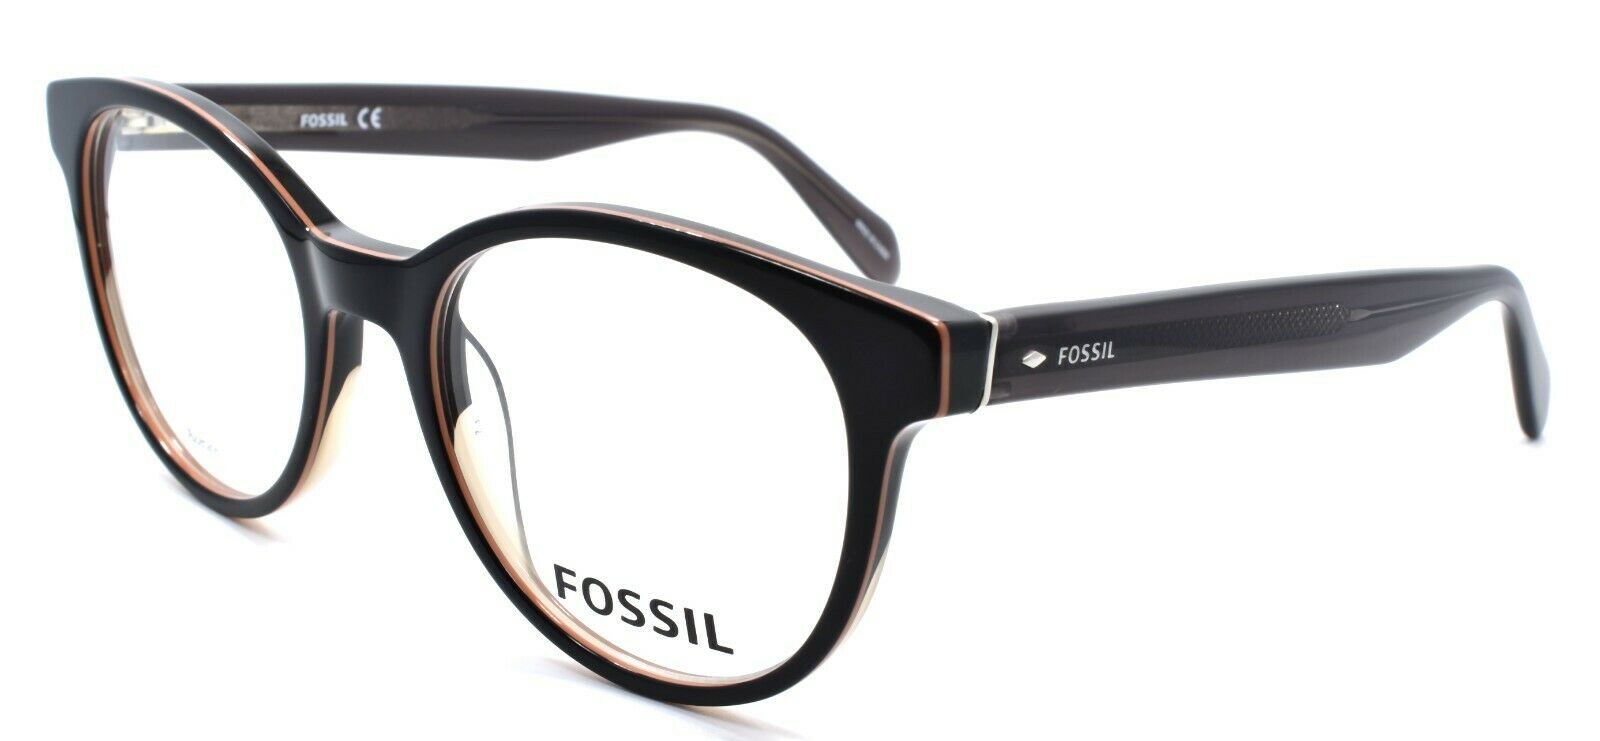 1-Fossil FOS 7012 807 Men's Eyeglasses Frames Round 50-19-145 Black-762753342577-IKSpecs